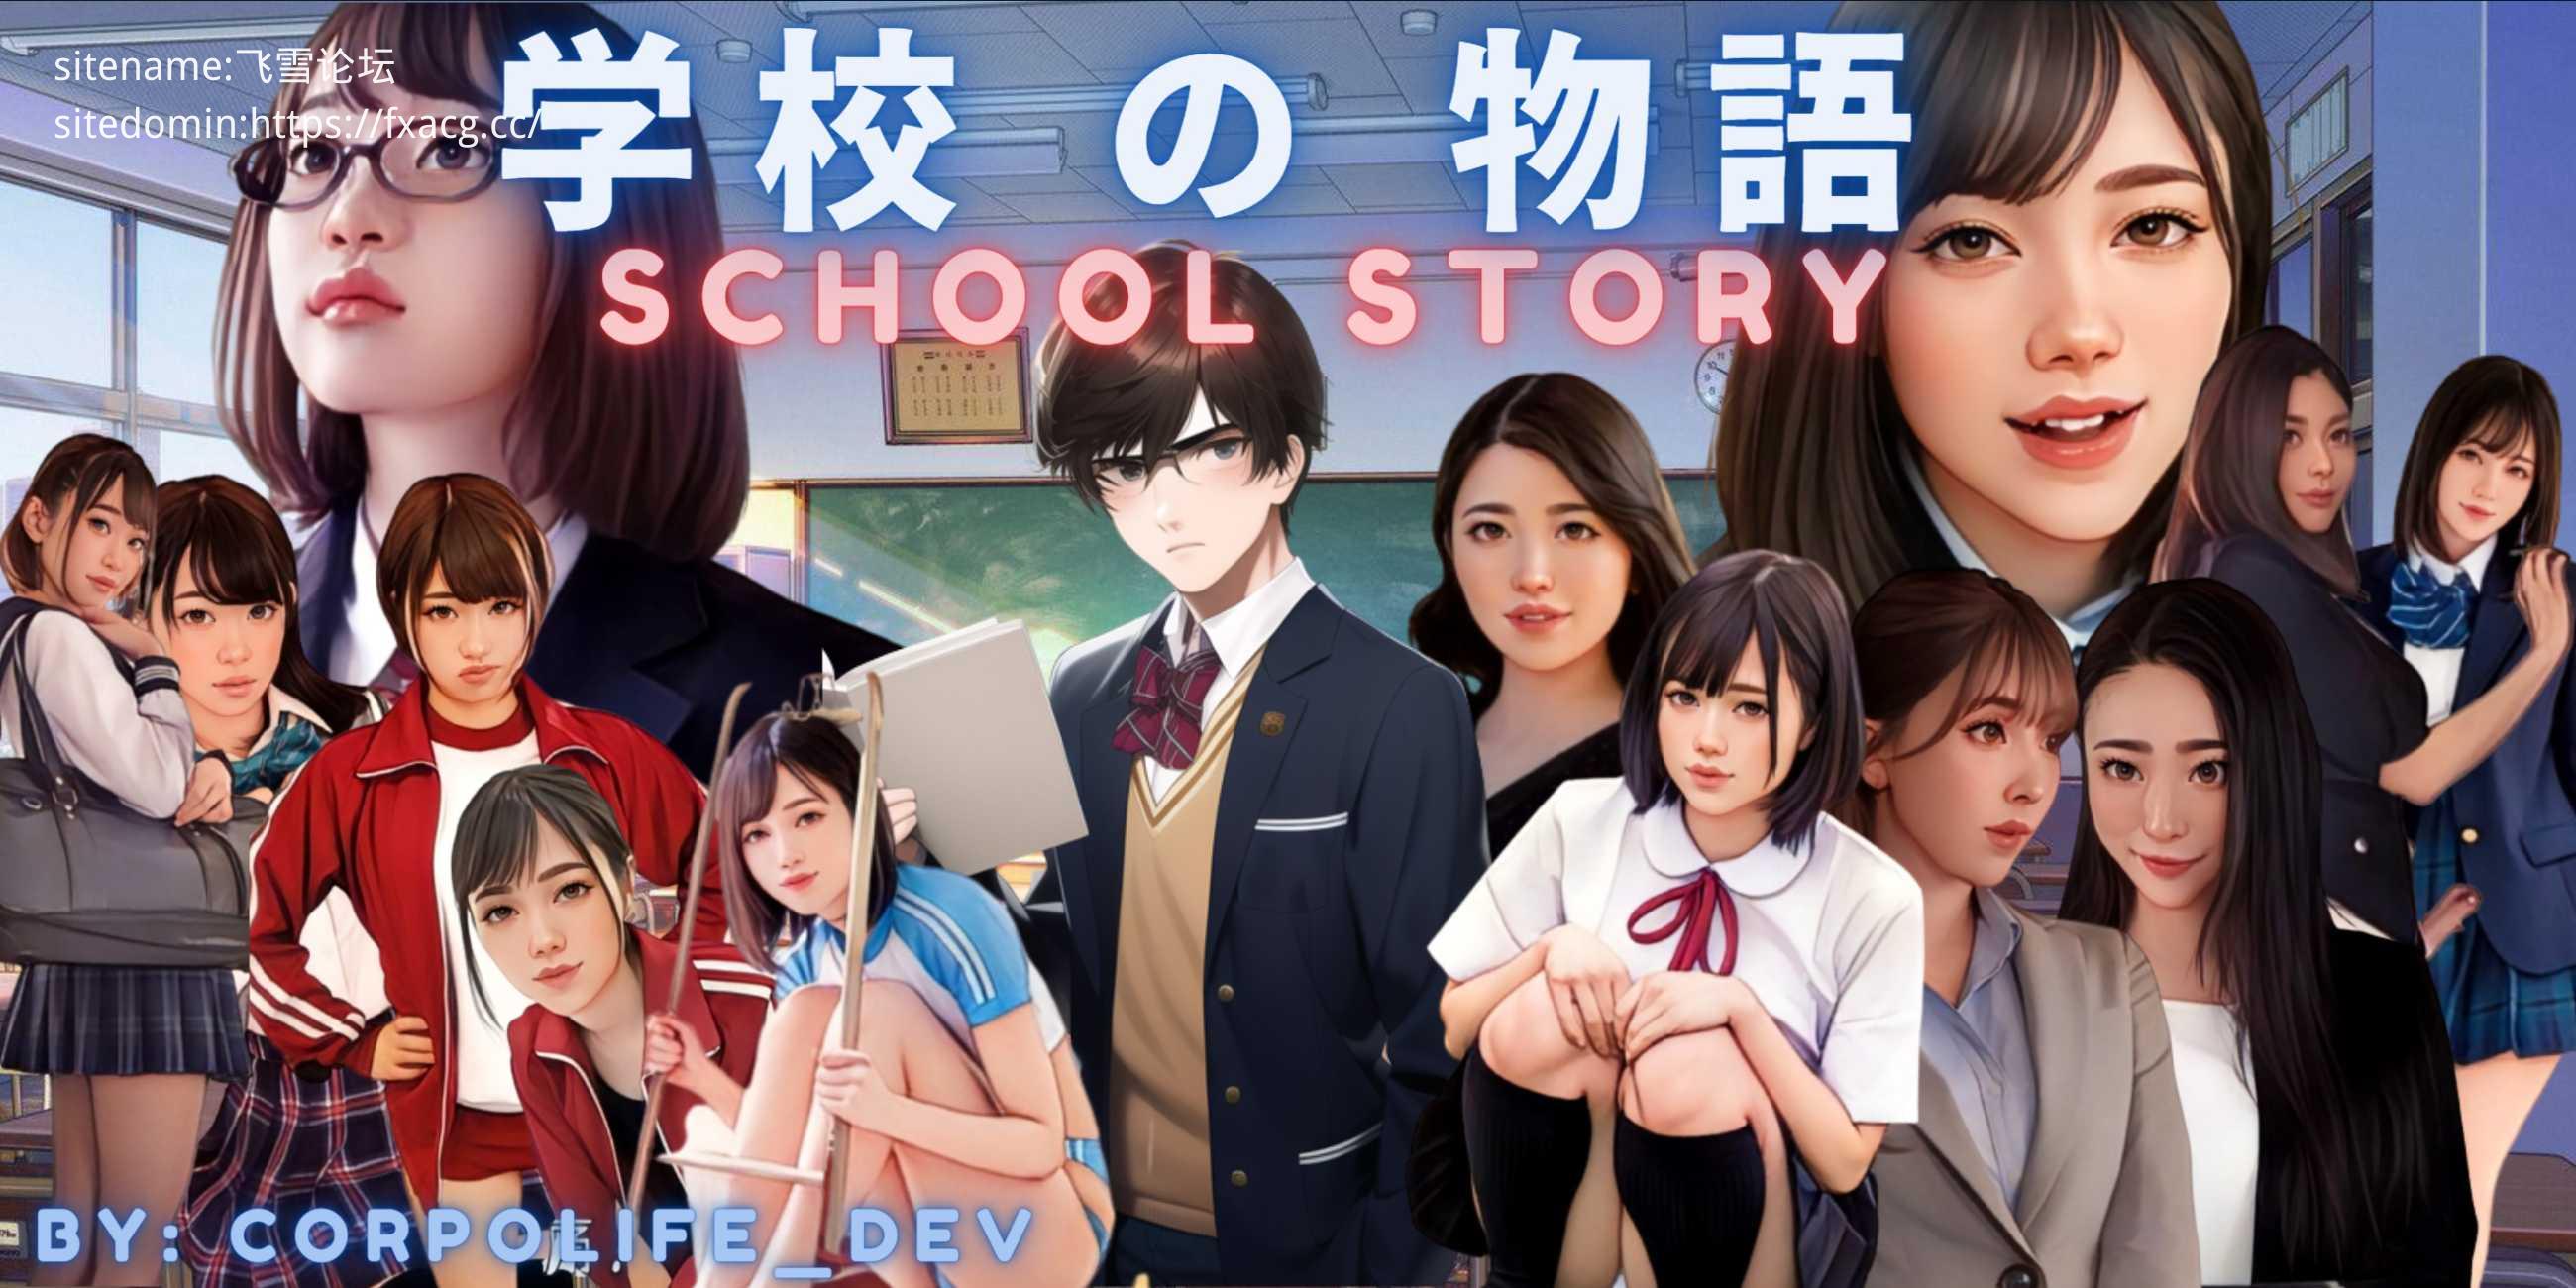 [现实真人HTML机翻汉化] 学校故事 Gakko No Monogatari - School Story [0.08][电脑4.55G/FM/OD]